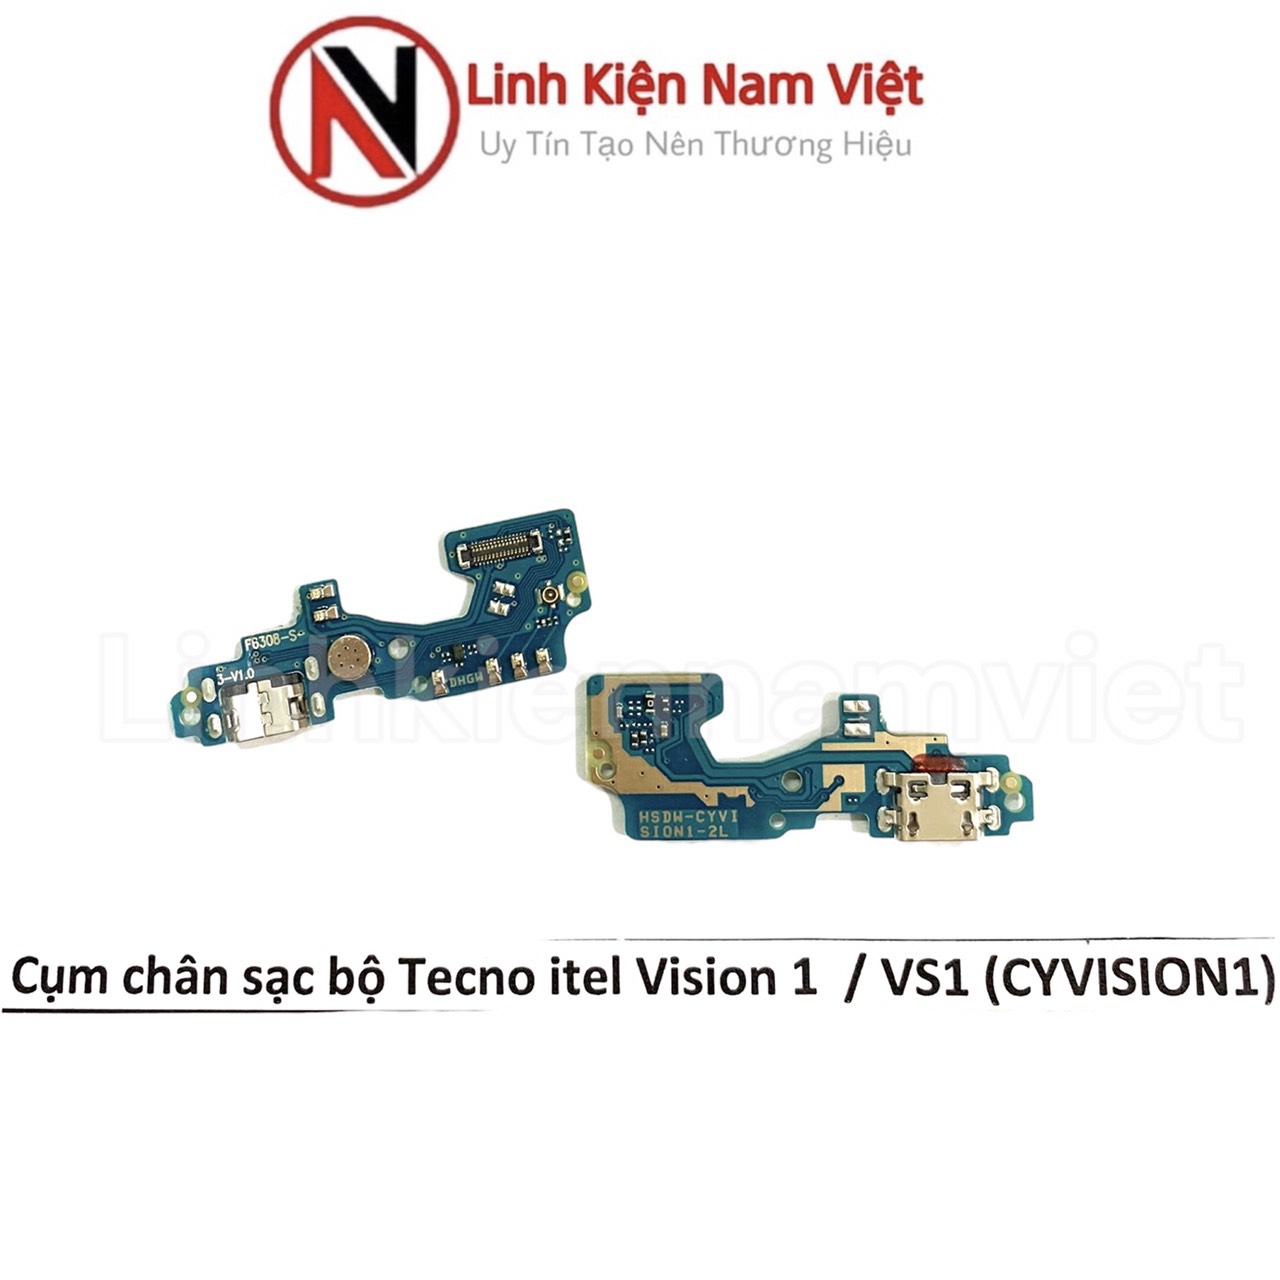 Cụm chân sạc bộ Tecno itel Vision 1 / VS1 (CYVISION1)